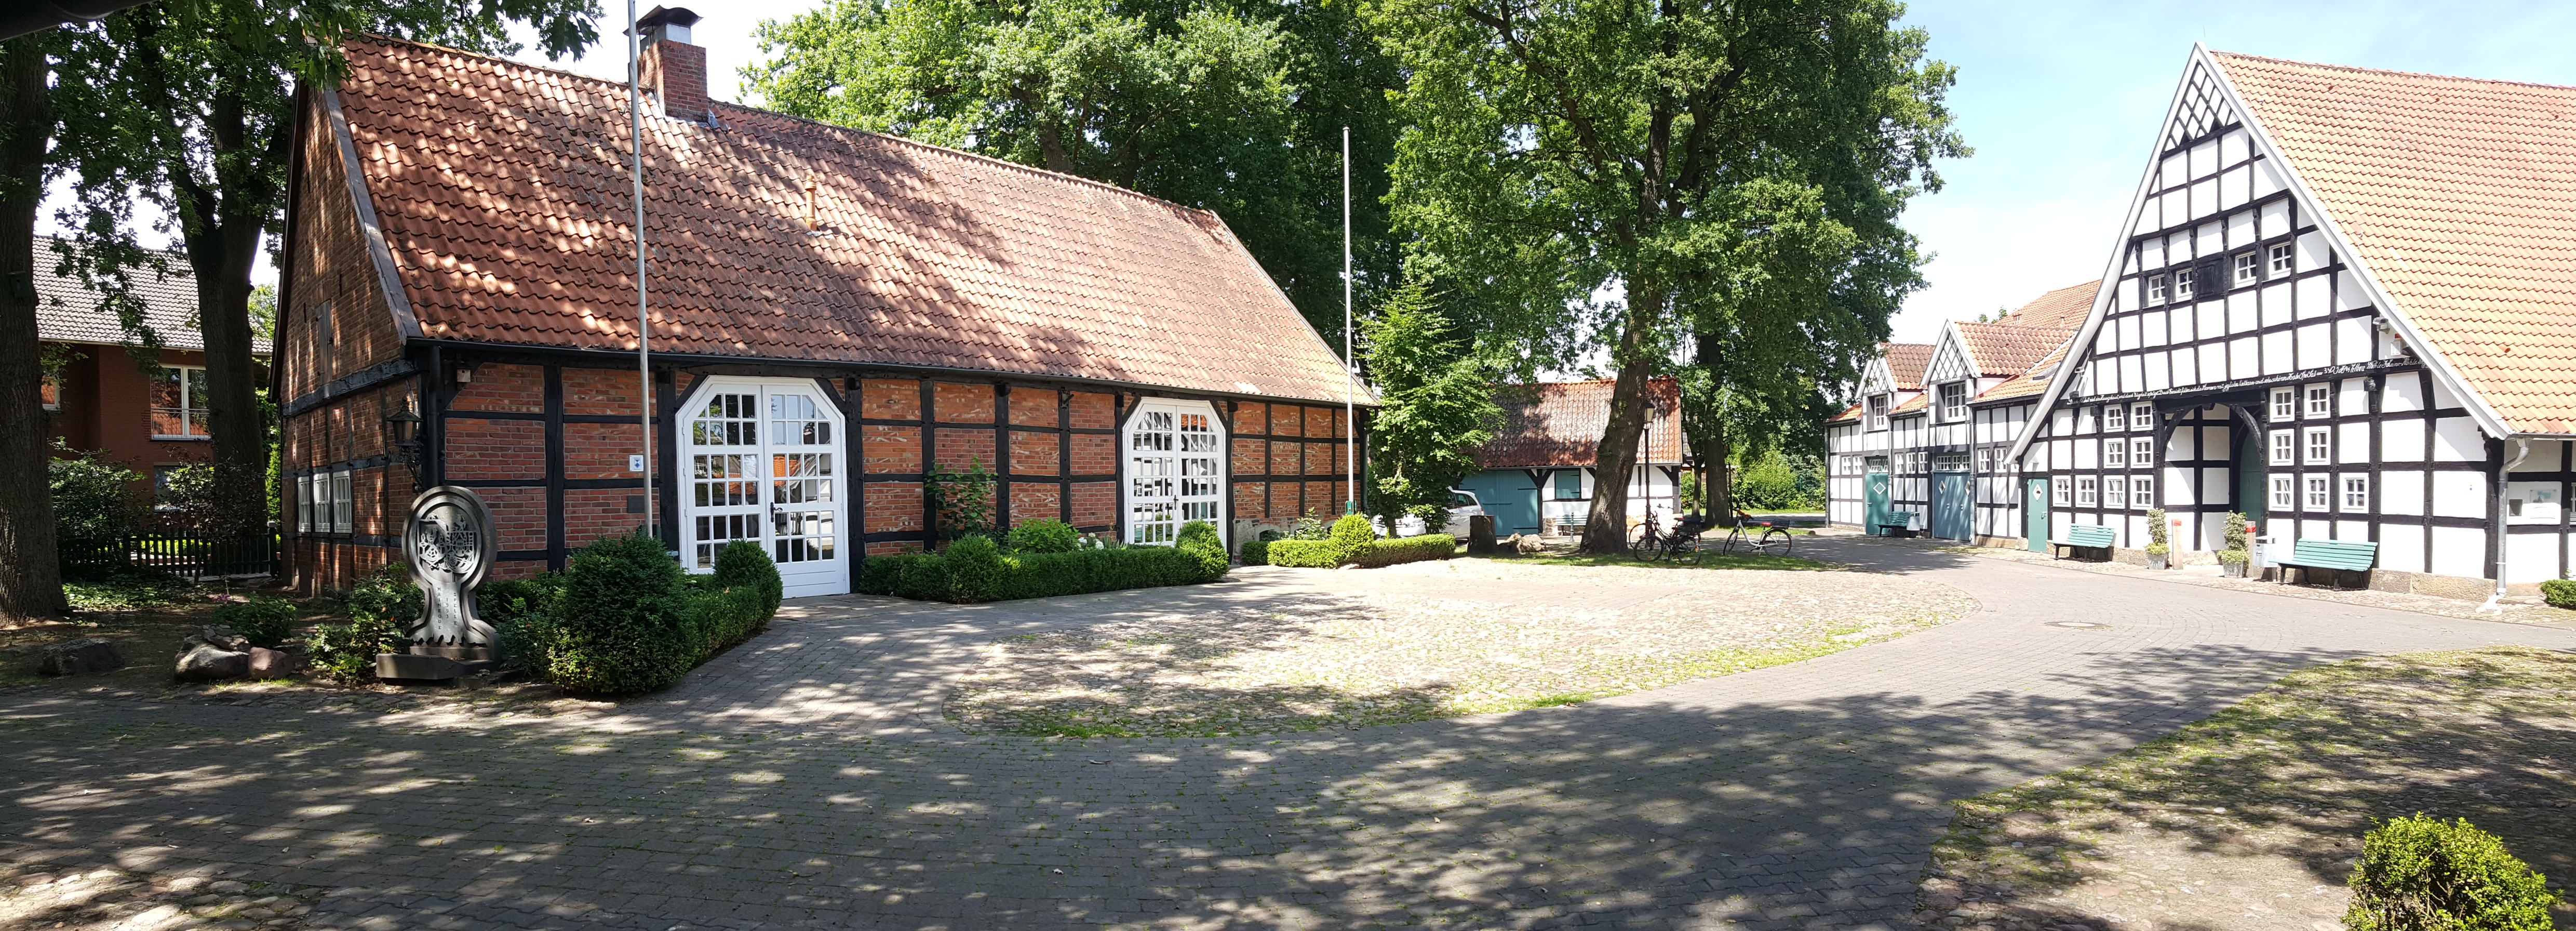 Der Wöhlehof in Spelle: Vom Bauernhof zum Vereins- und Kulturzentrum